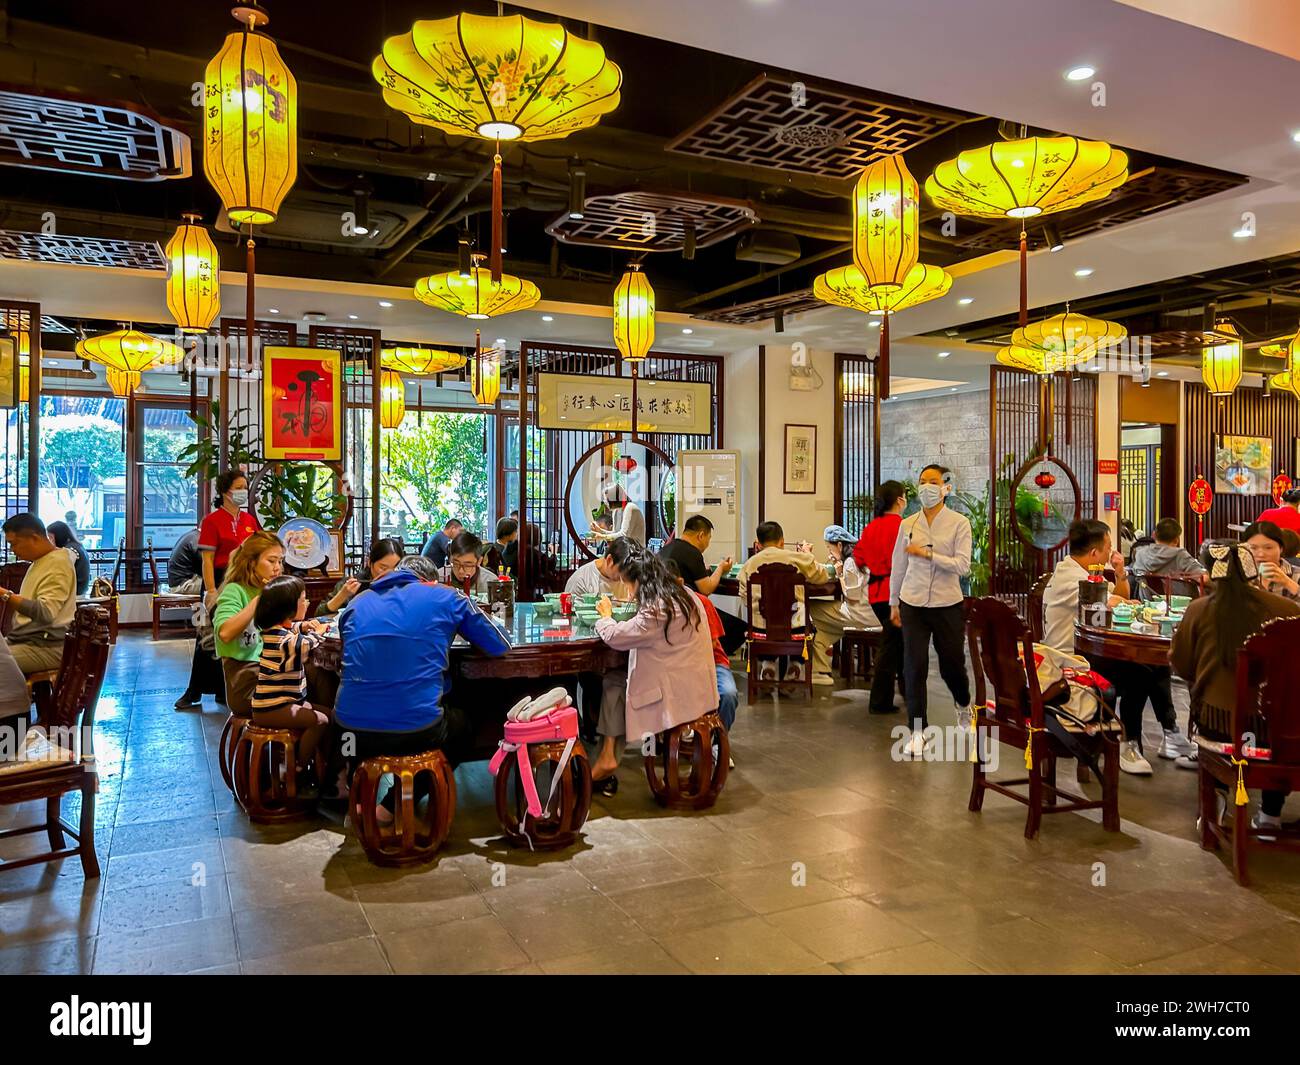 Suzhou, Chine, les gens de grande foule, assis à l'intérieur aux tables, partager des repas, touristes chinois, restaurants chinois, intérieur Banque D'Images